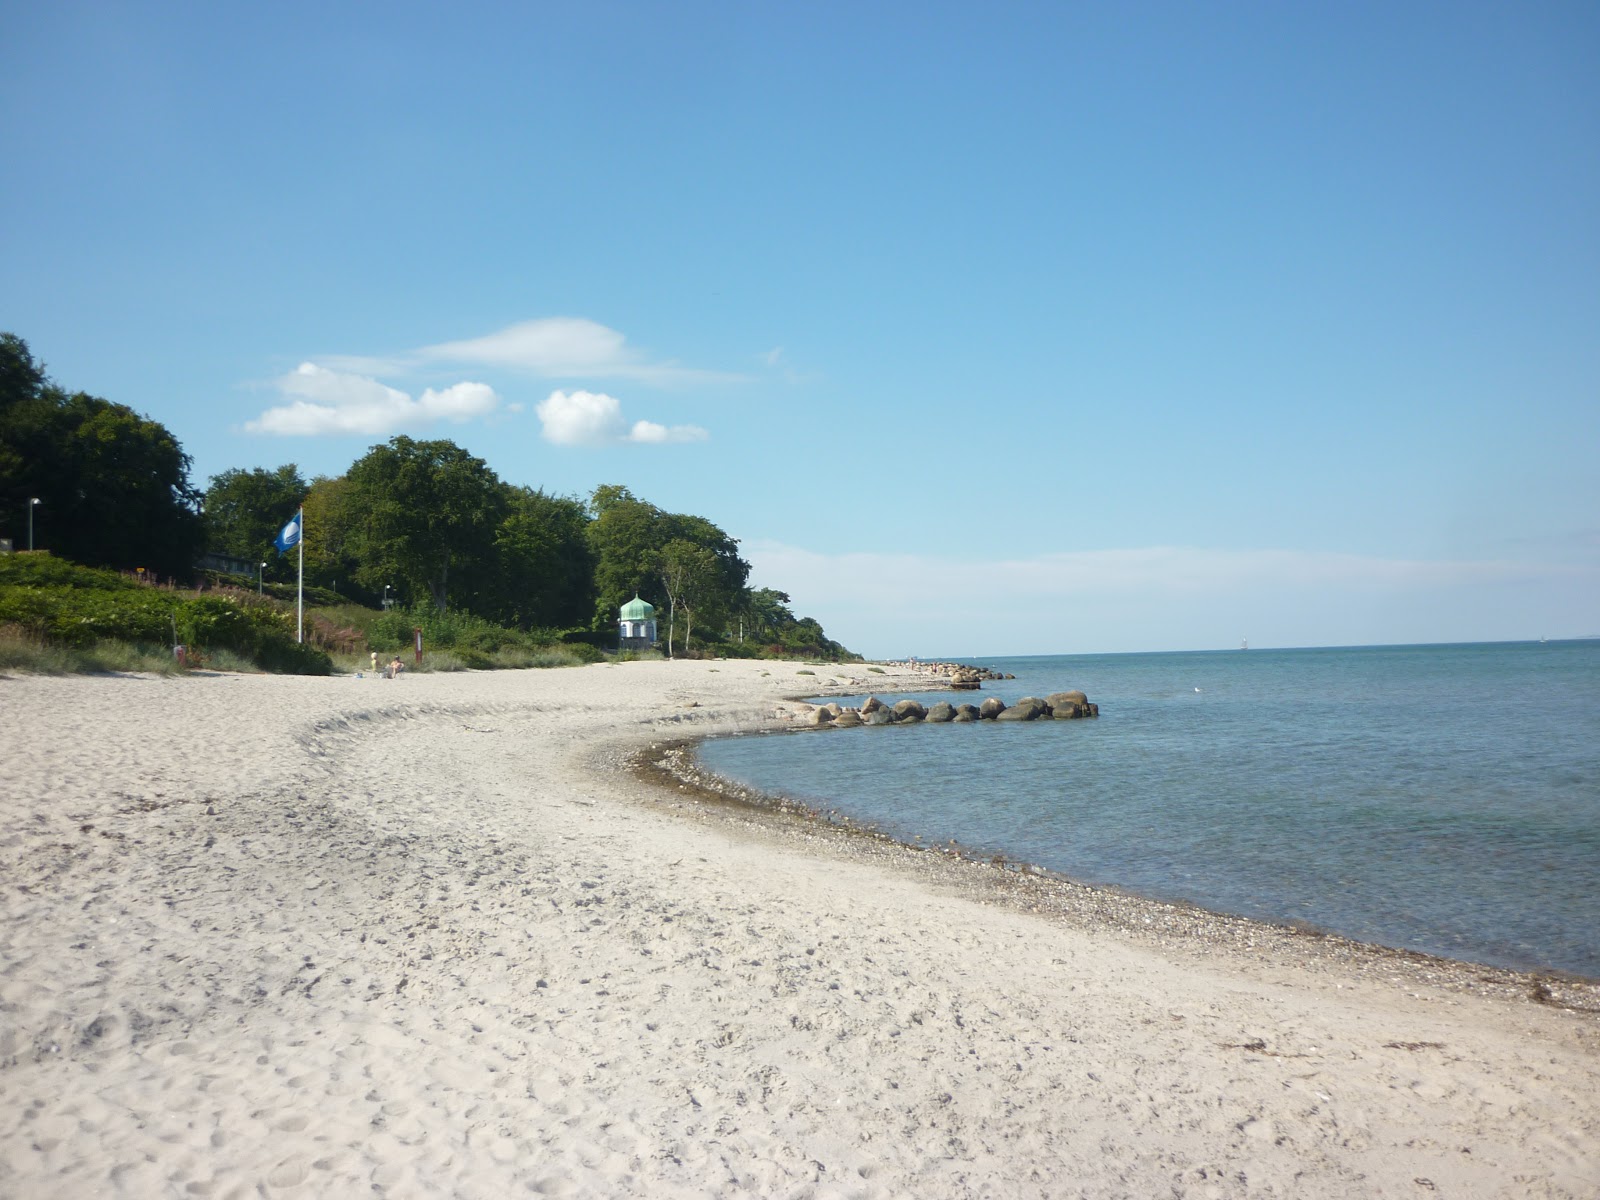 Julebek Beach'in fotoğrafı geniş plaj ile birlikte